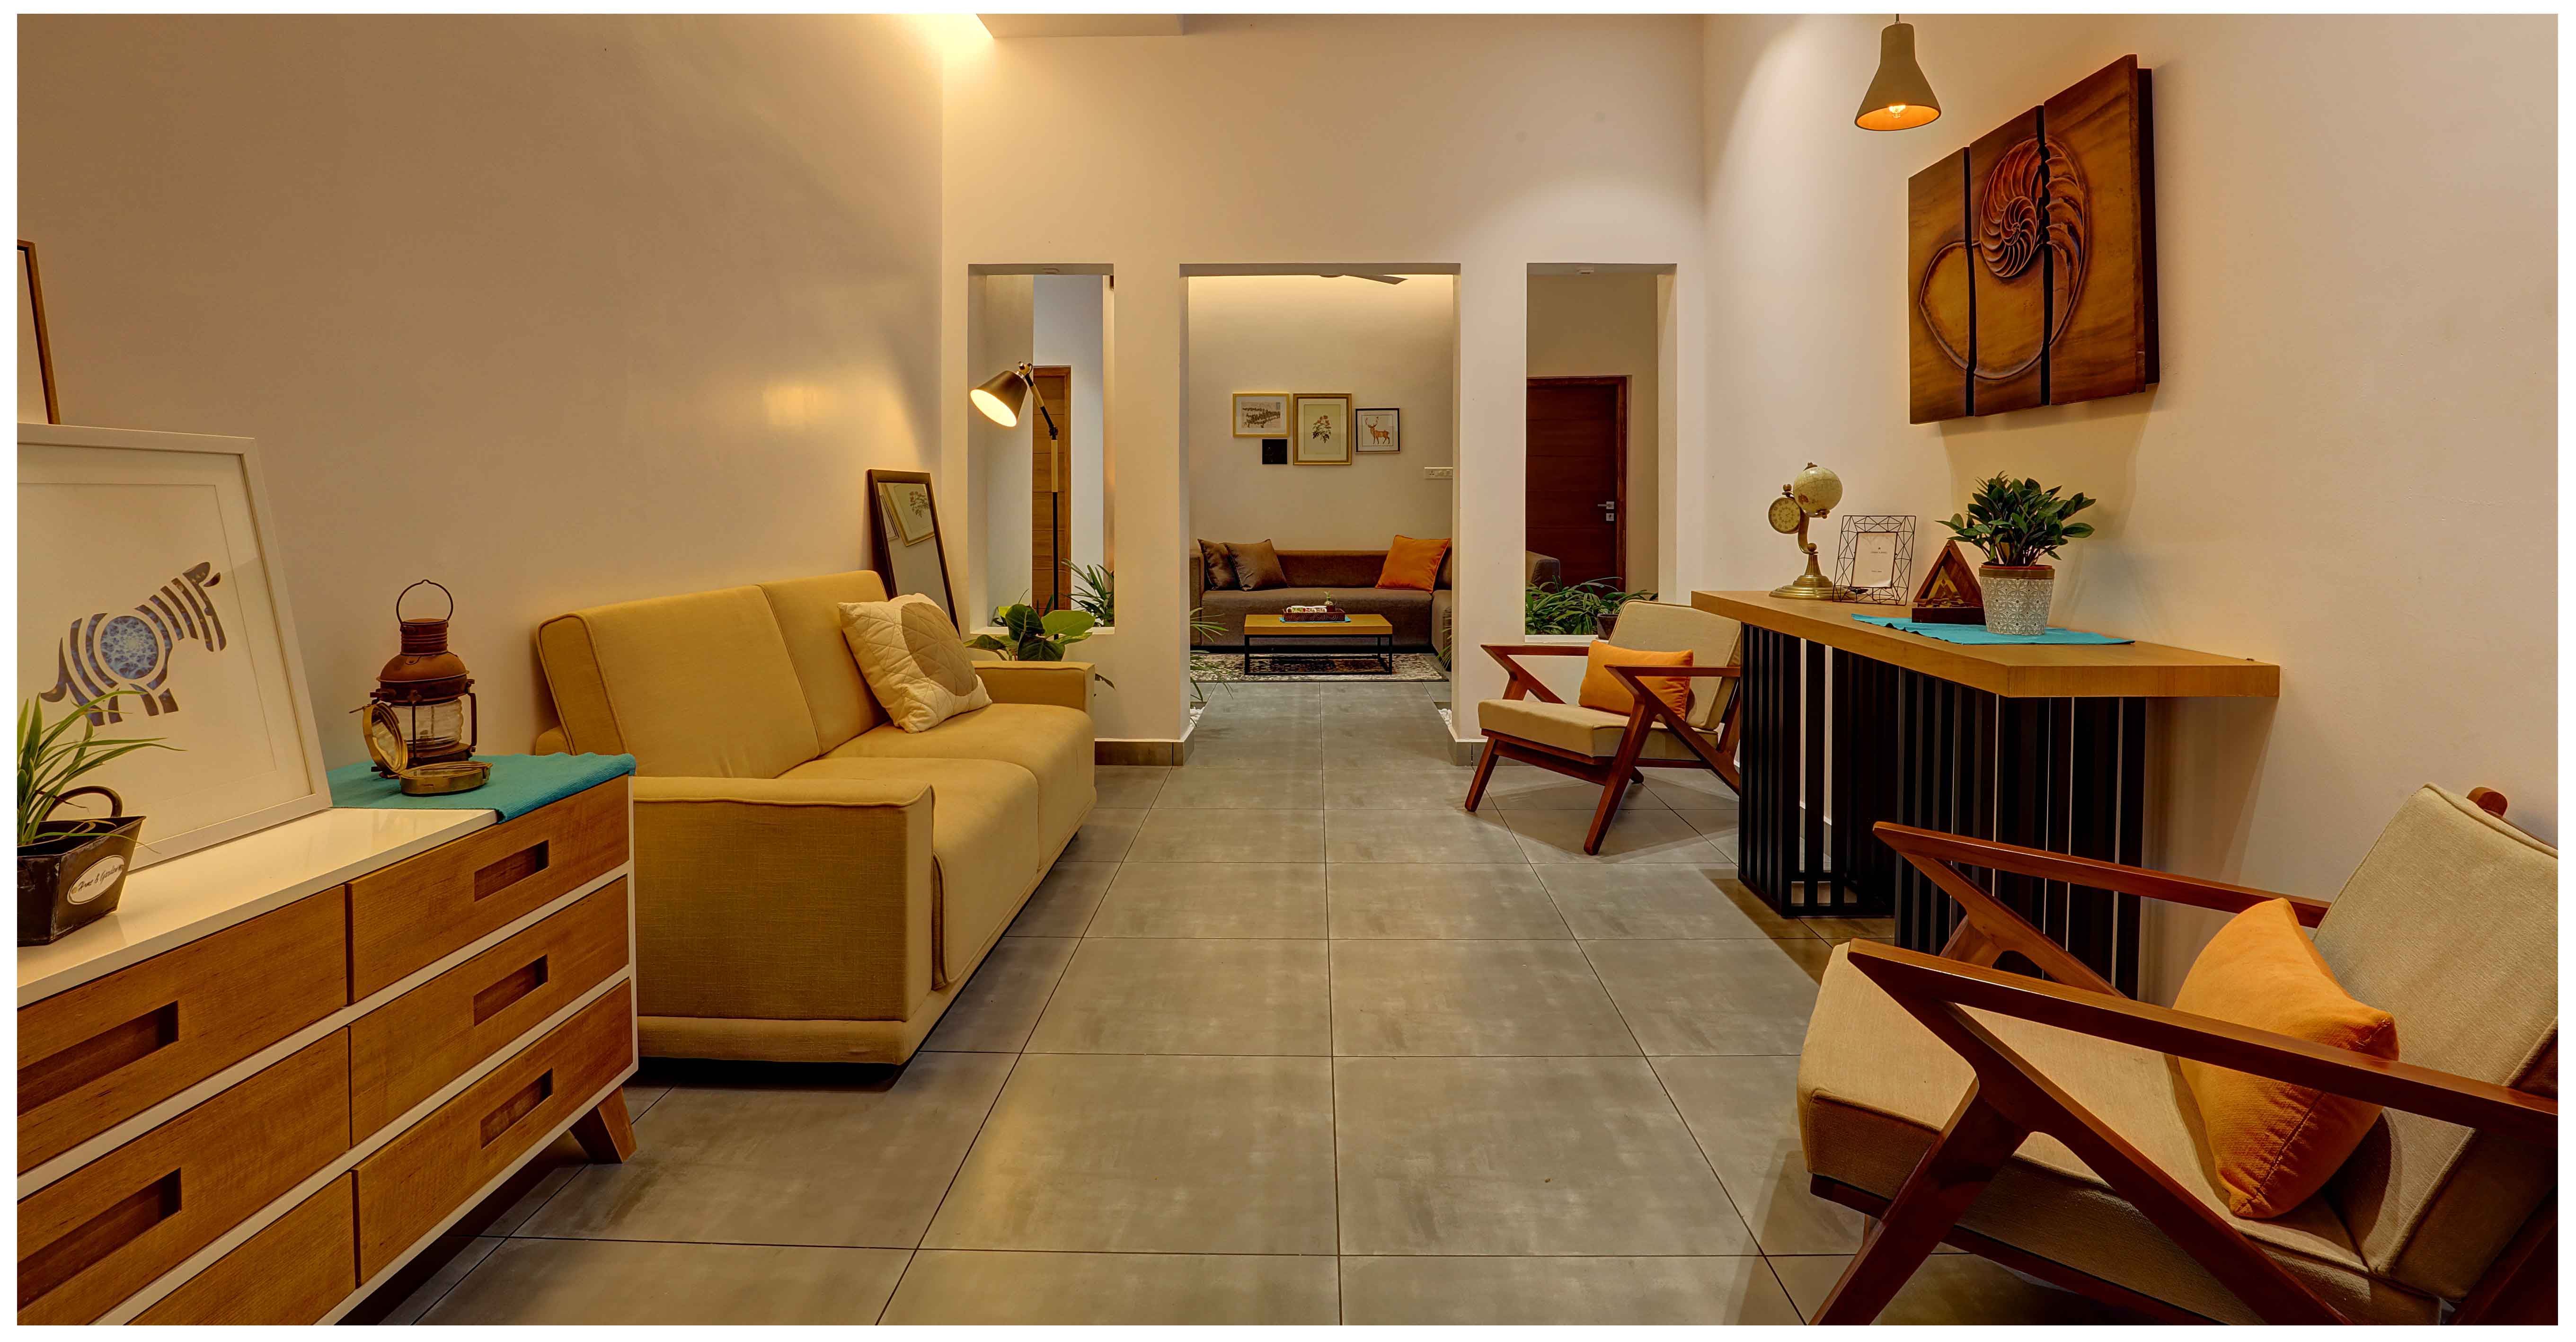  interior design consultant in kochi, cochin